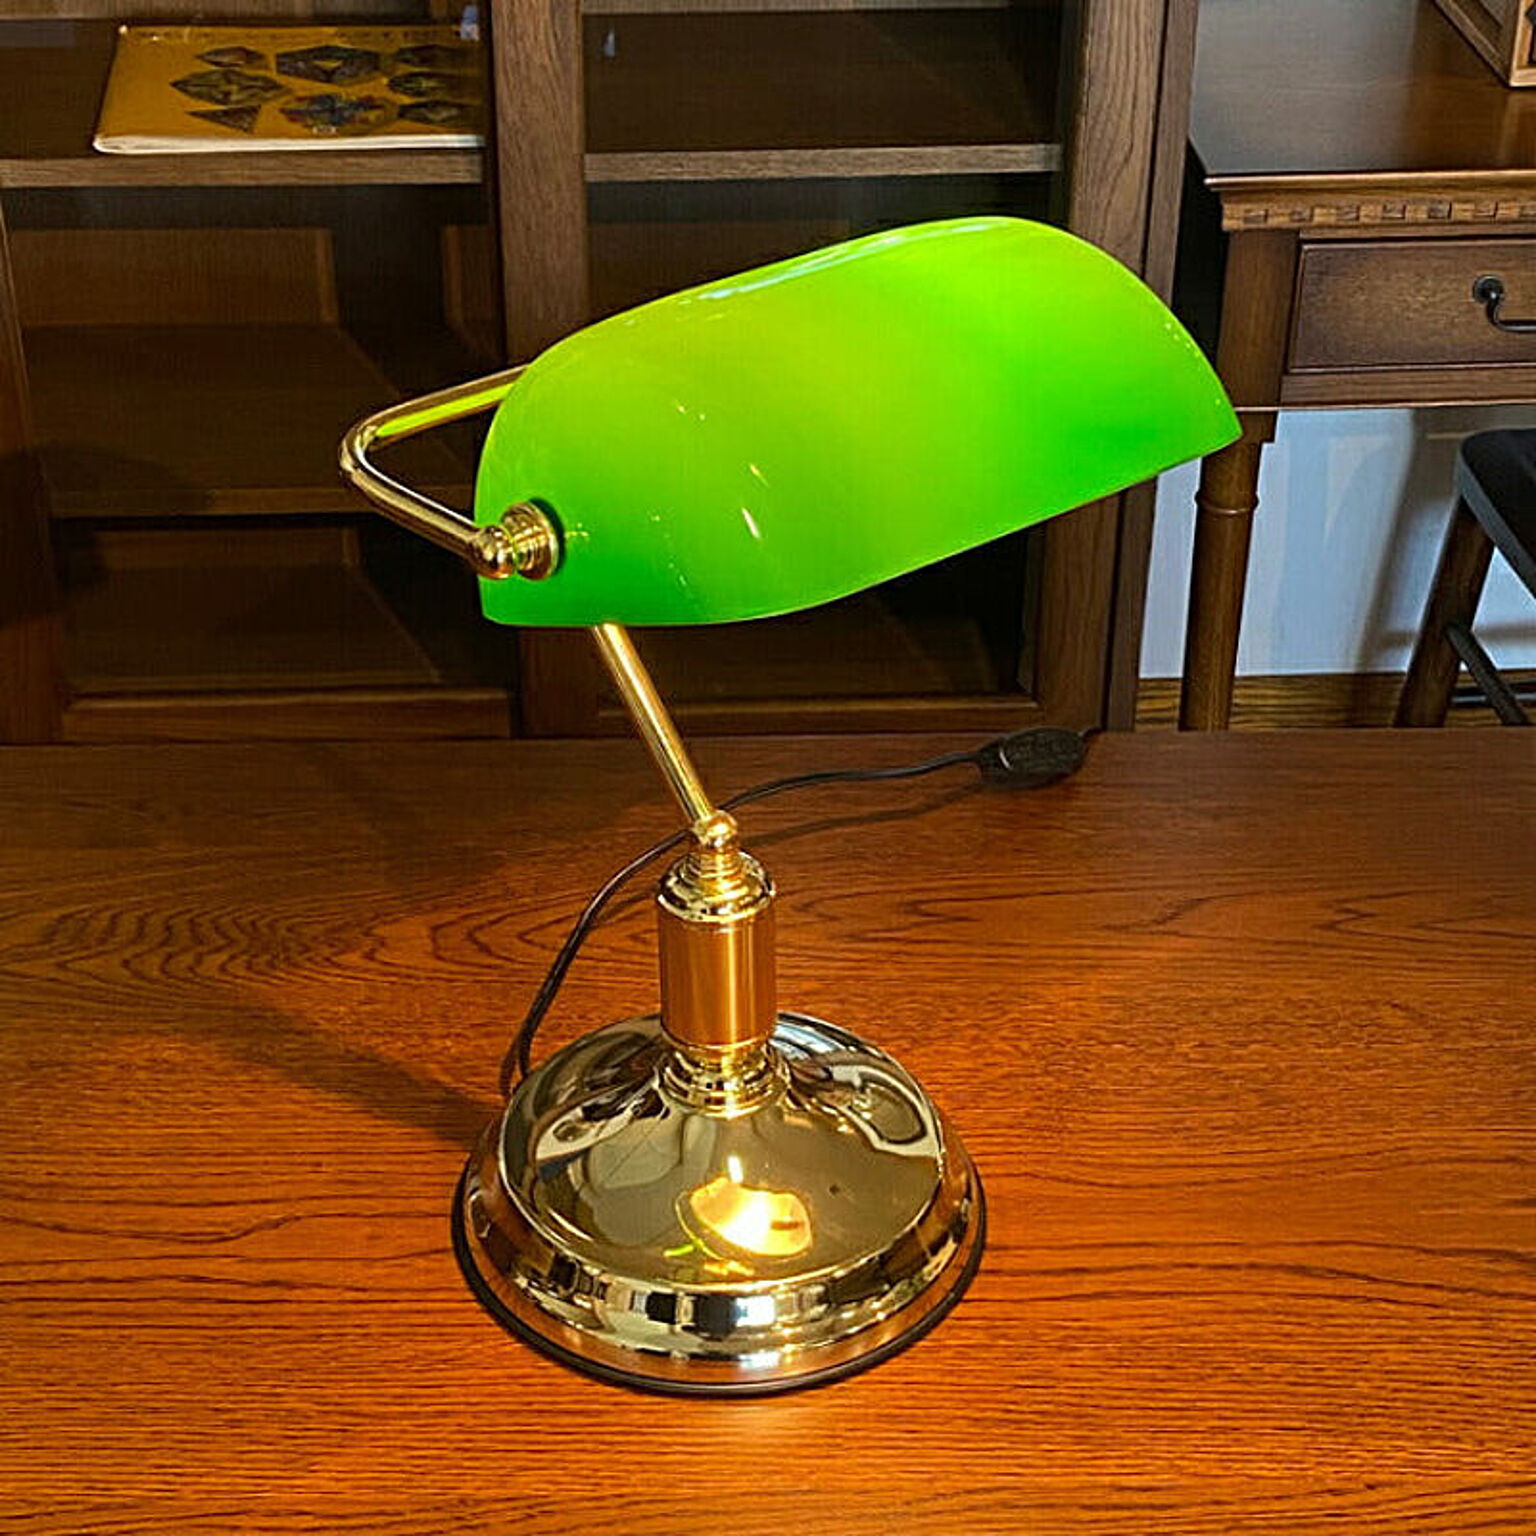 デスクランプ 照明 ランプ デスク用ランプ アンティーク調 バンカーズランプ グリーン 緑 おしゃれ シンプル スタンド式 モダン 間接照明  贈り物【送料無料】デスクランプ